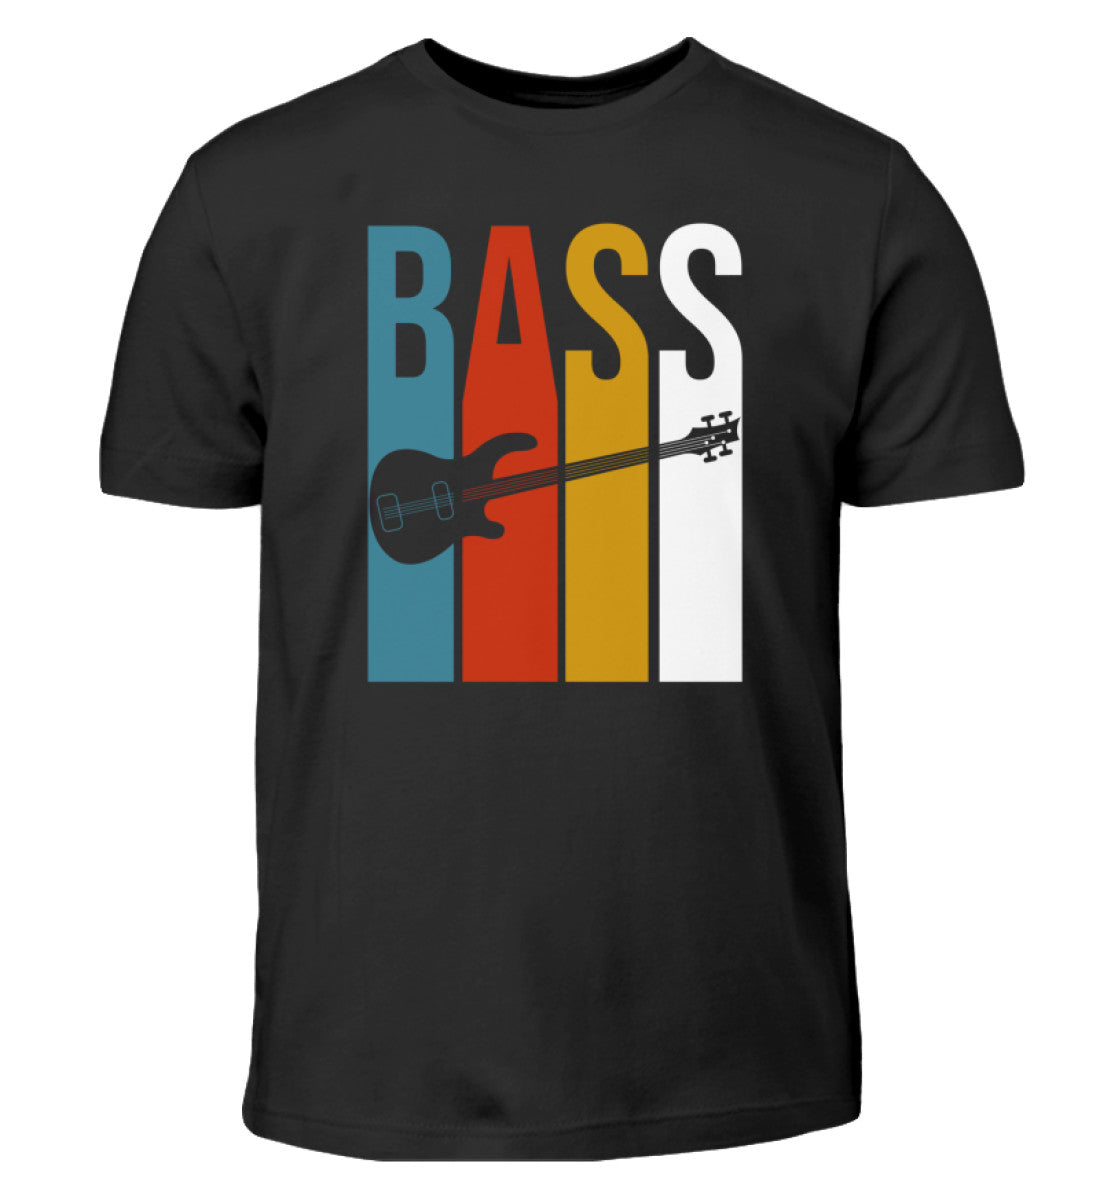 Bass Kinder T-Shirt